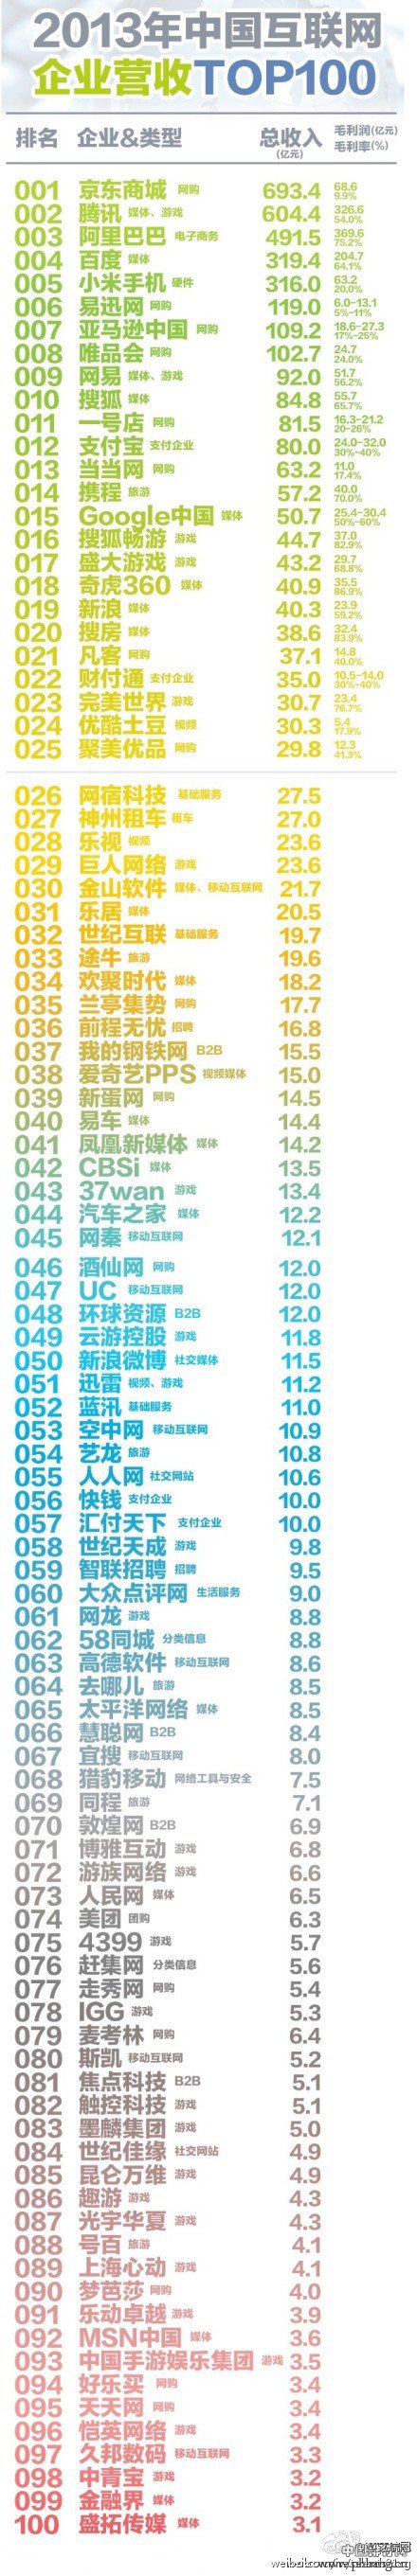 2013中国互联网企业营业收入100强排行